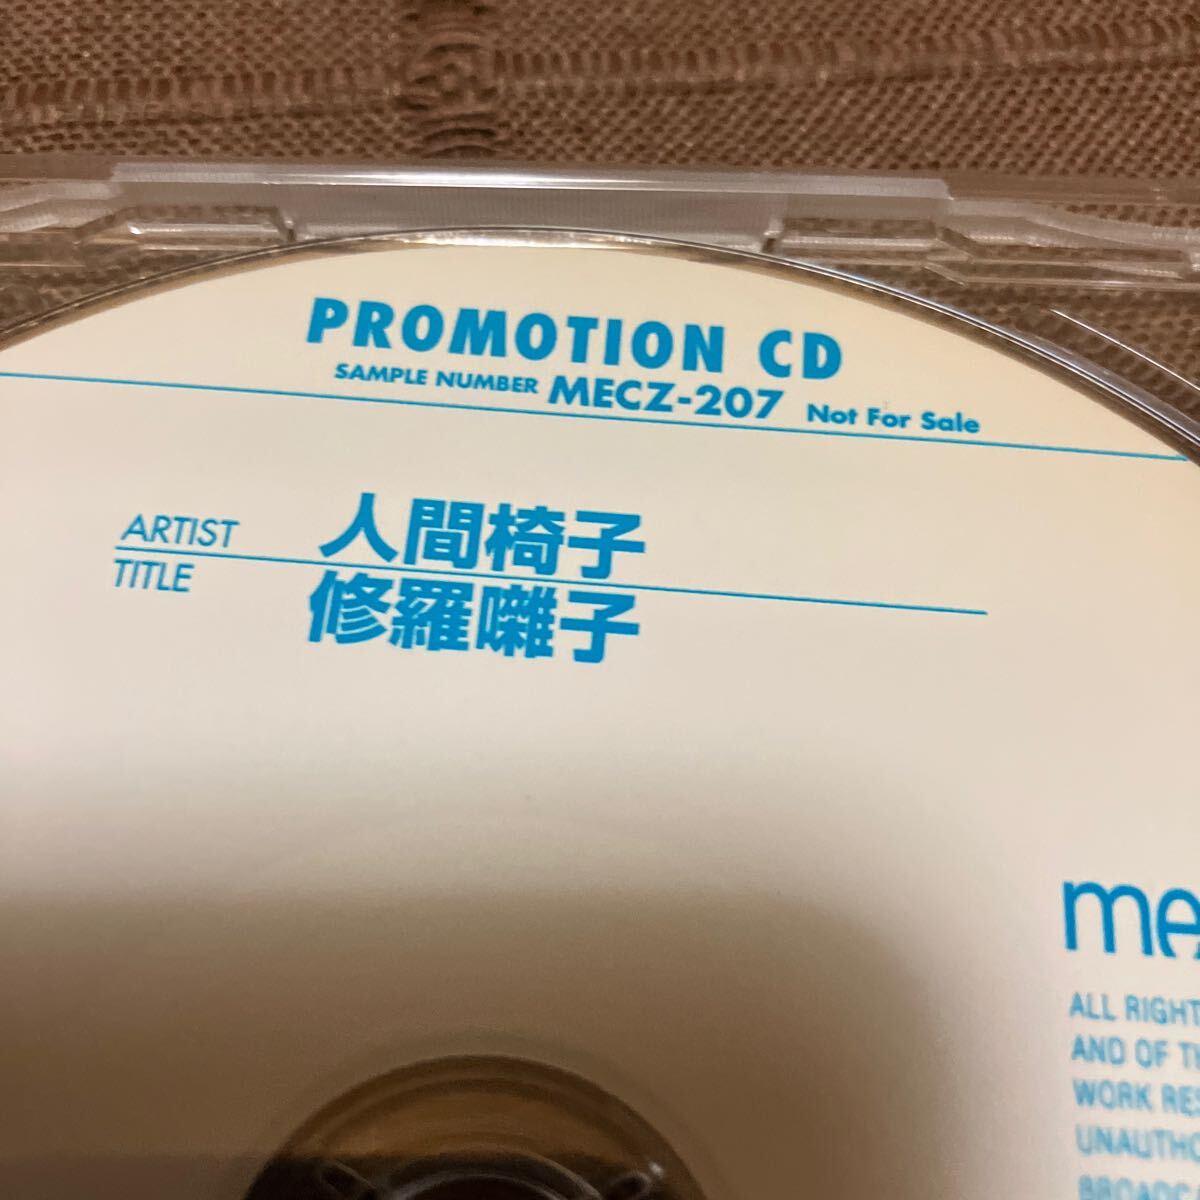 鬼レア 非売品 音楽CD 人間椅子 / 修羅囃子 11曲収録 プロモ盤 MECZ-207_画像4